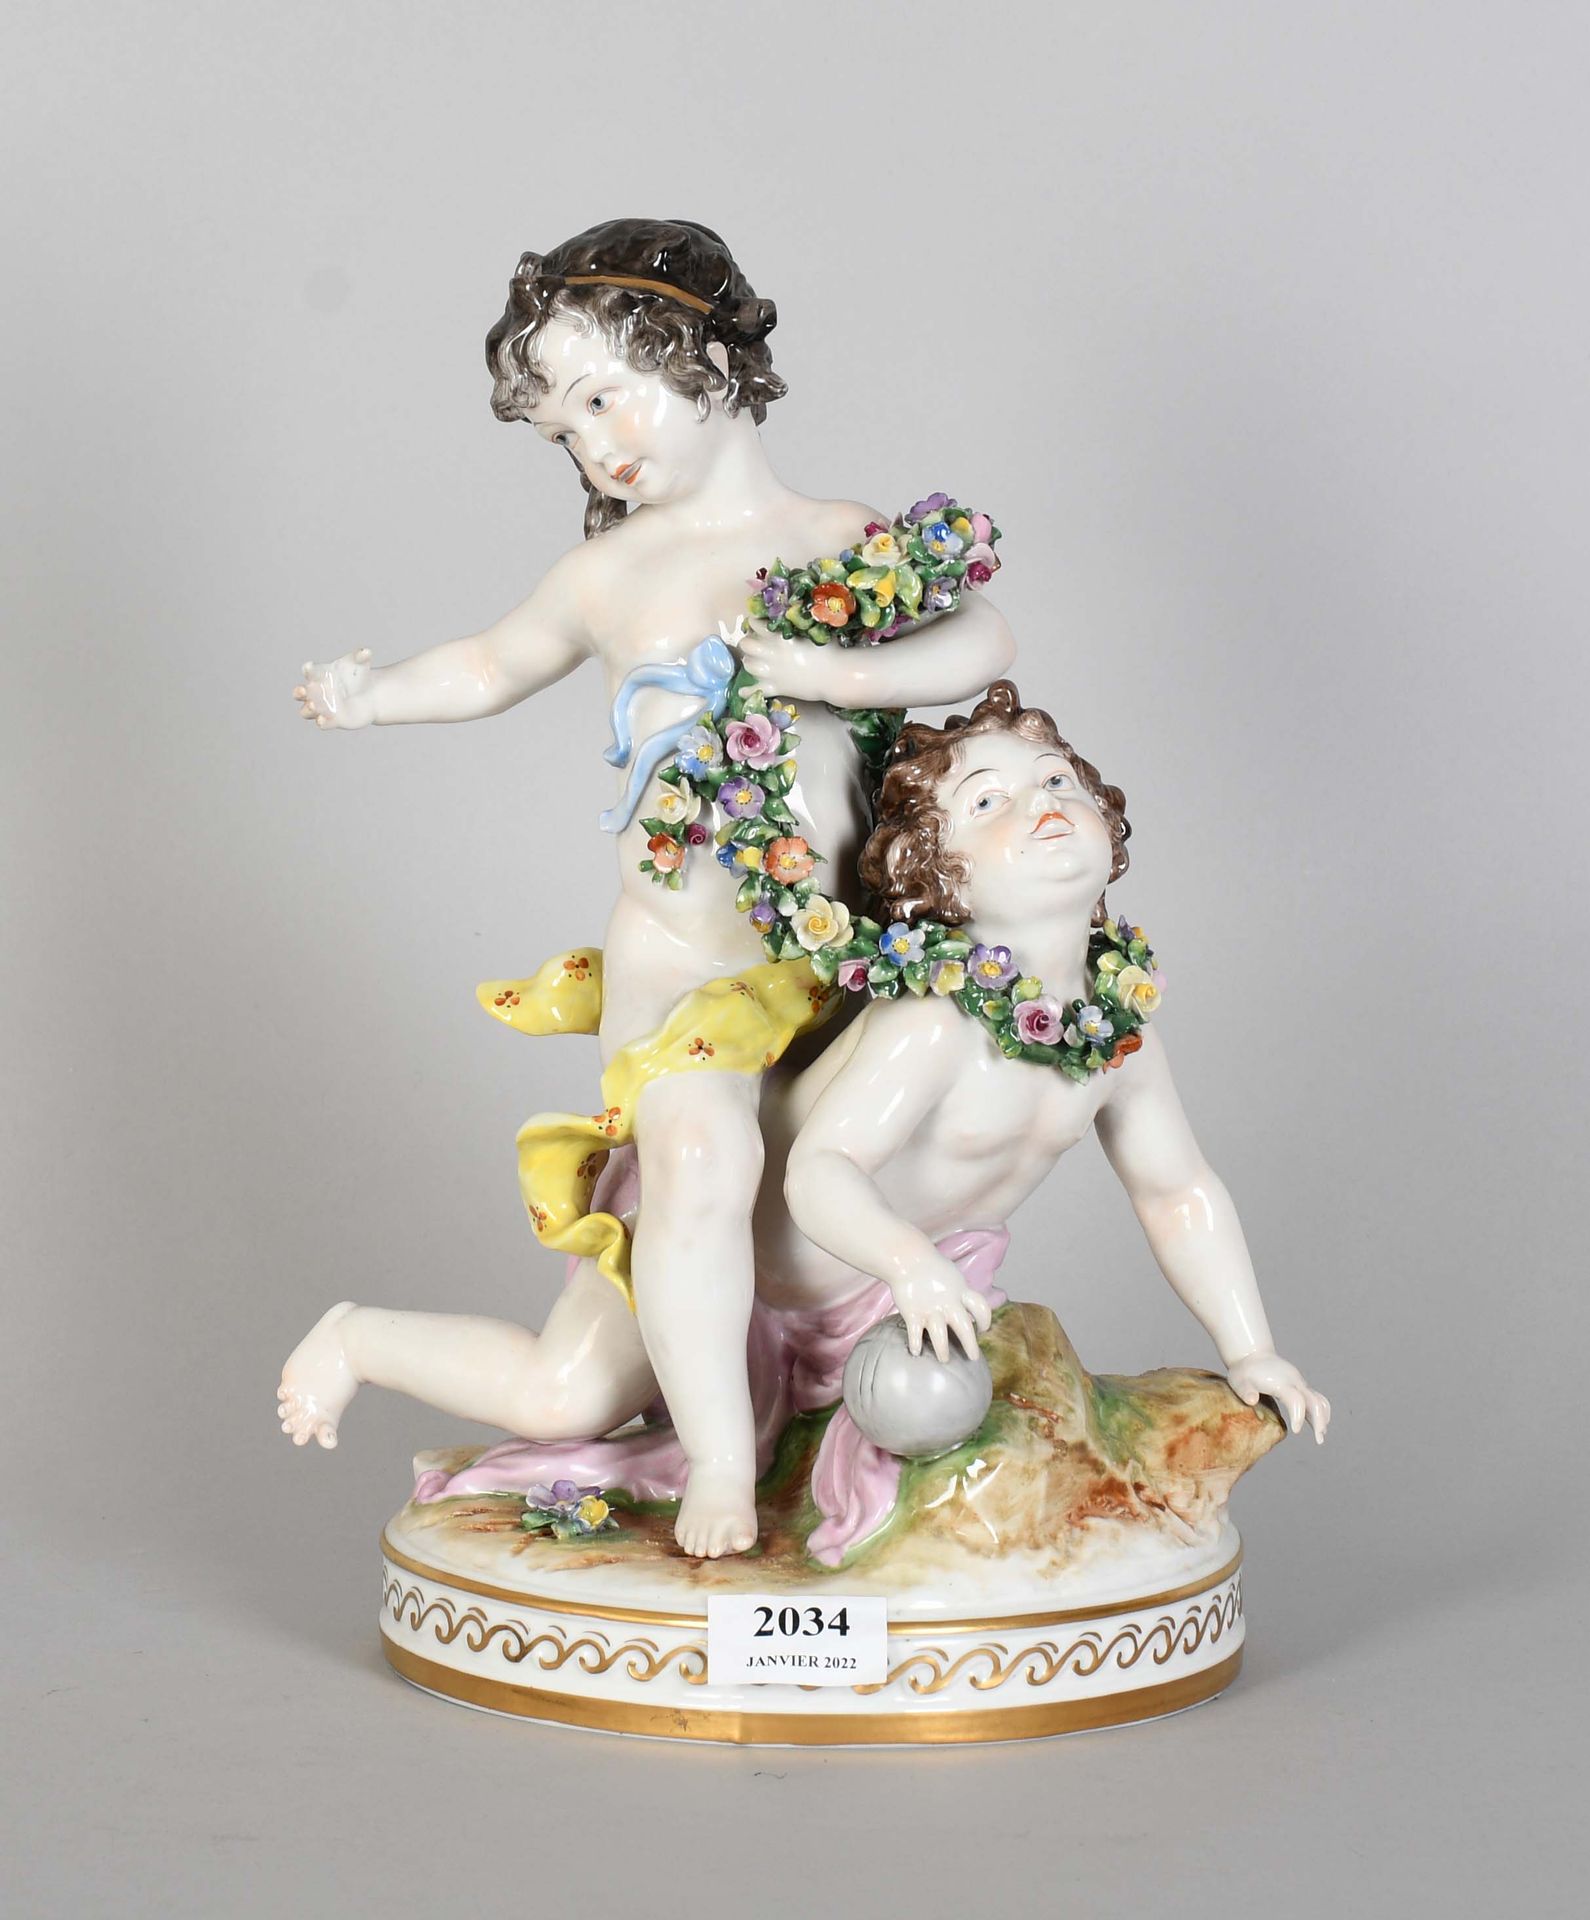 Null Sajonia

Grupo de porcelana policromada: "Dos niños jugando y guirnalda flo&hellip;